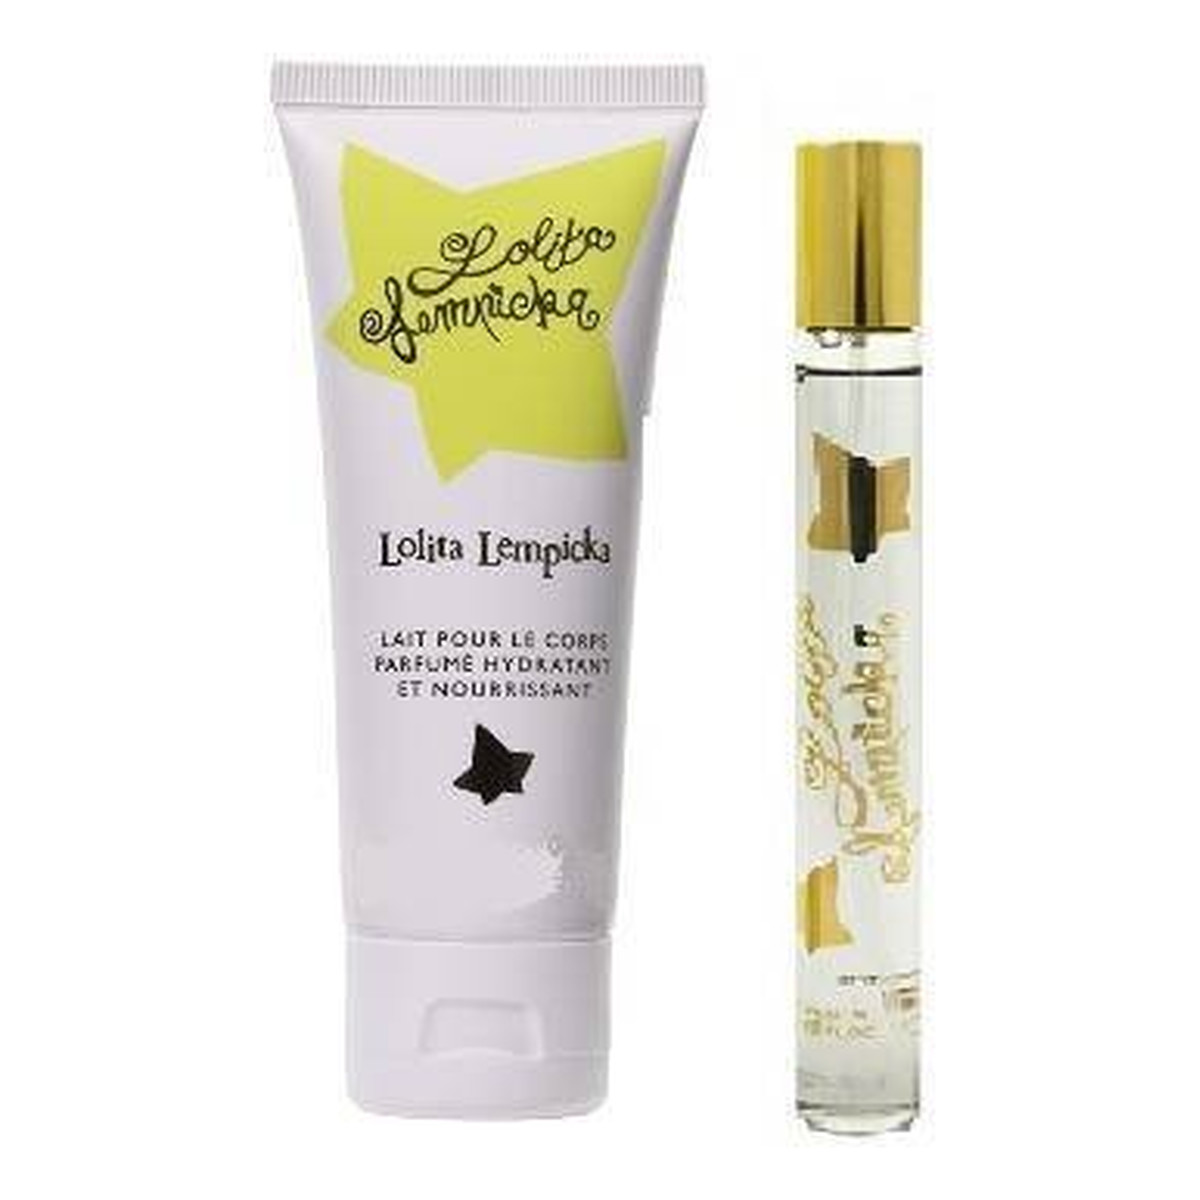 Lolita Lempicka Zestaw miniatura wody perfumowanej spray 7.5ml + balsam do ciała 50ml